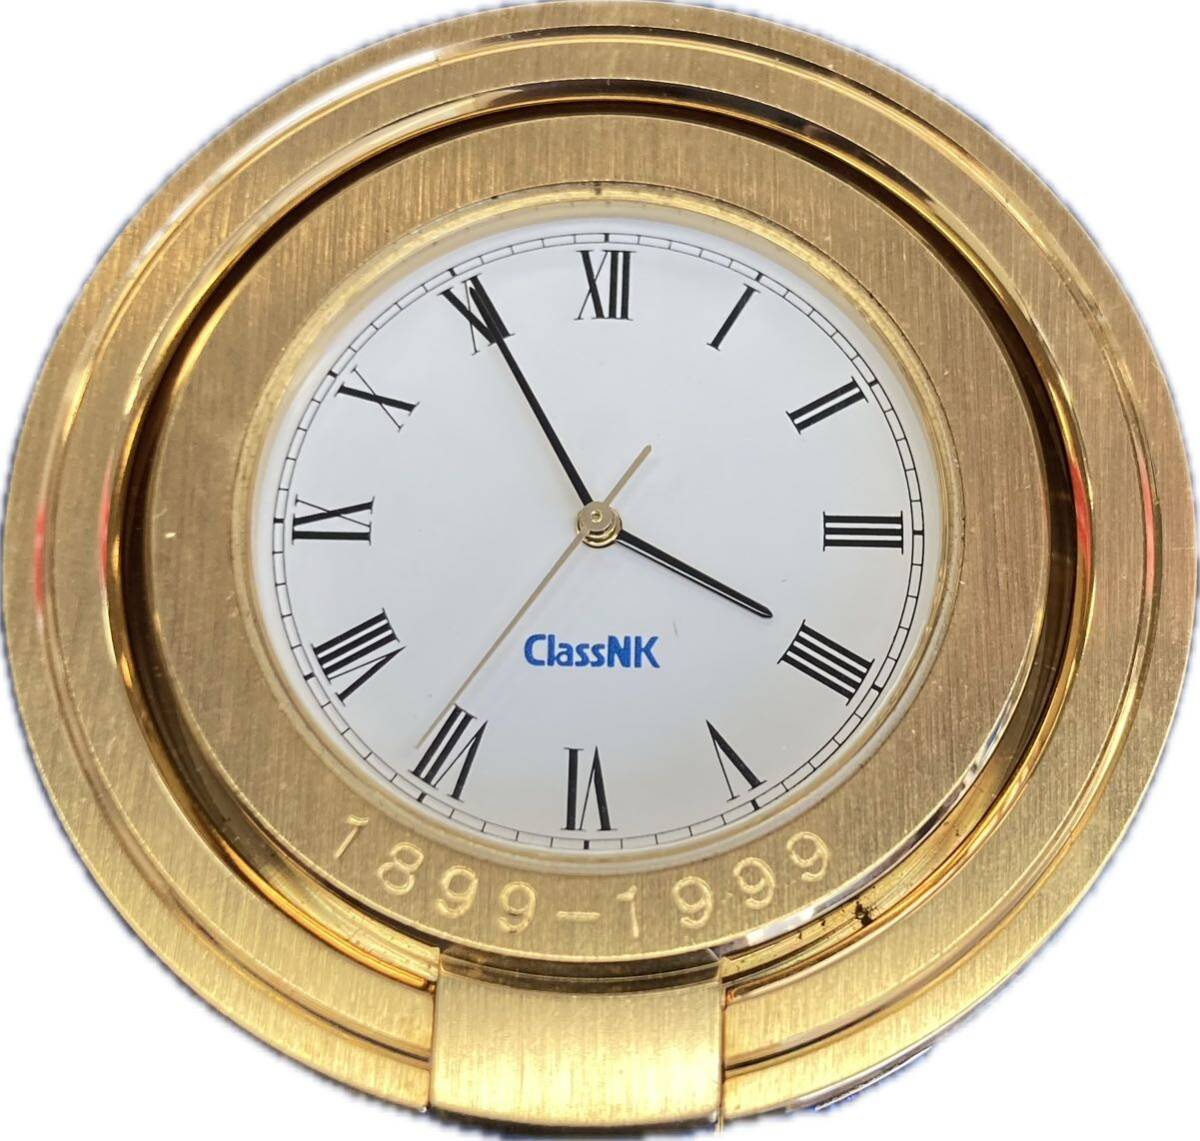 [ прекрасный товар!! не продается!!]Class NK Class enke- настольные часы NIPPON KAIJI KYOKAI 1899-1999 не продается с футляром Gold золотой цвет модный 